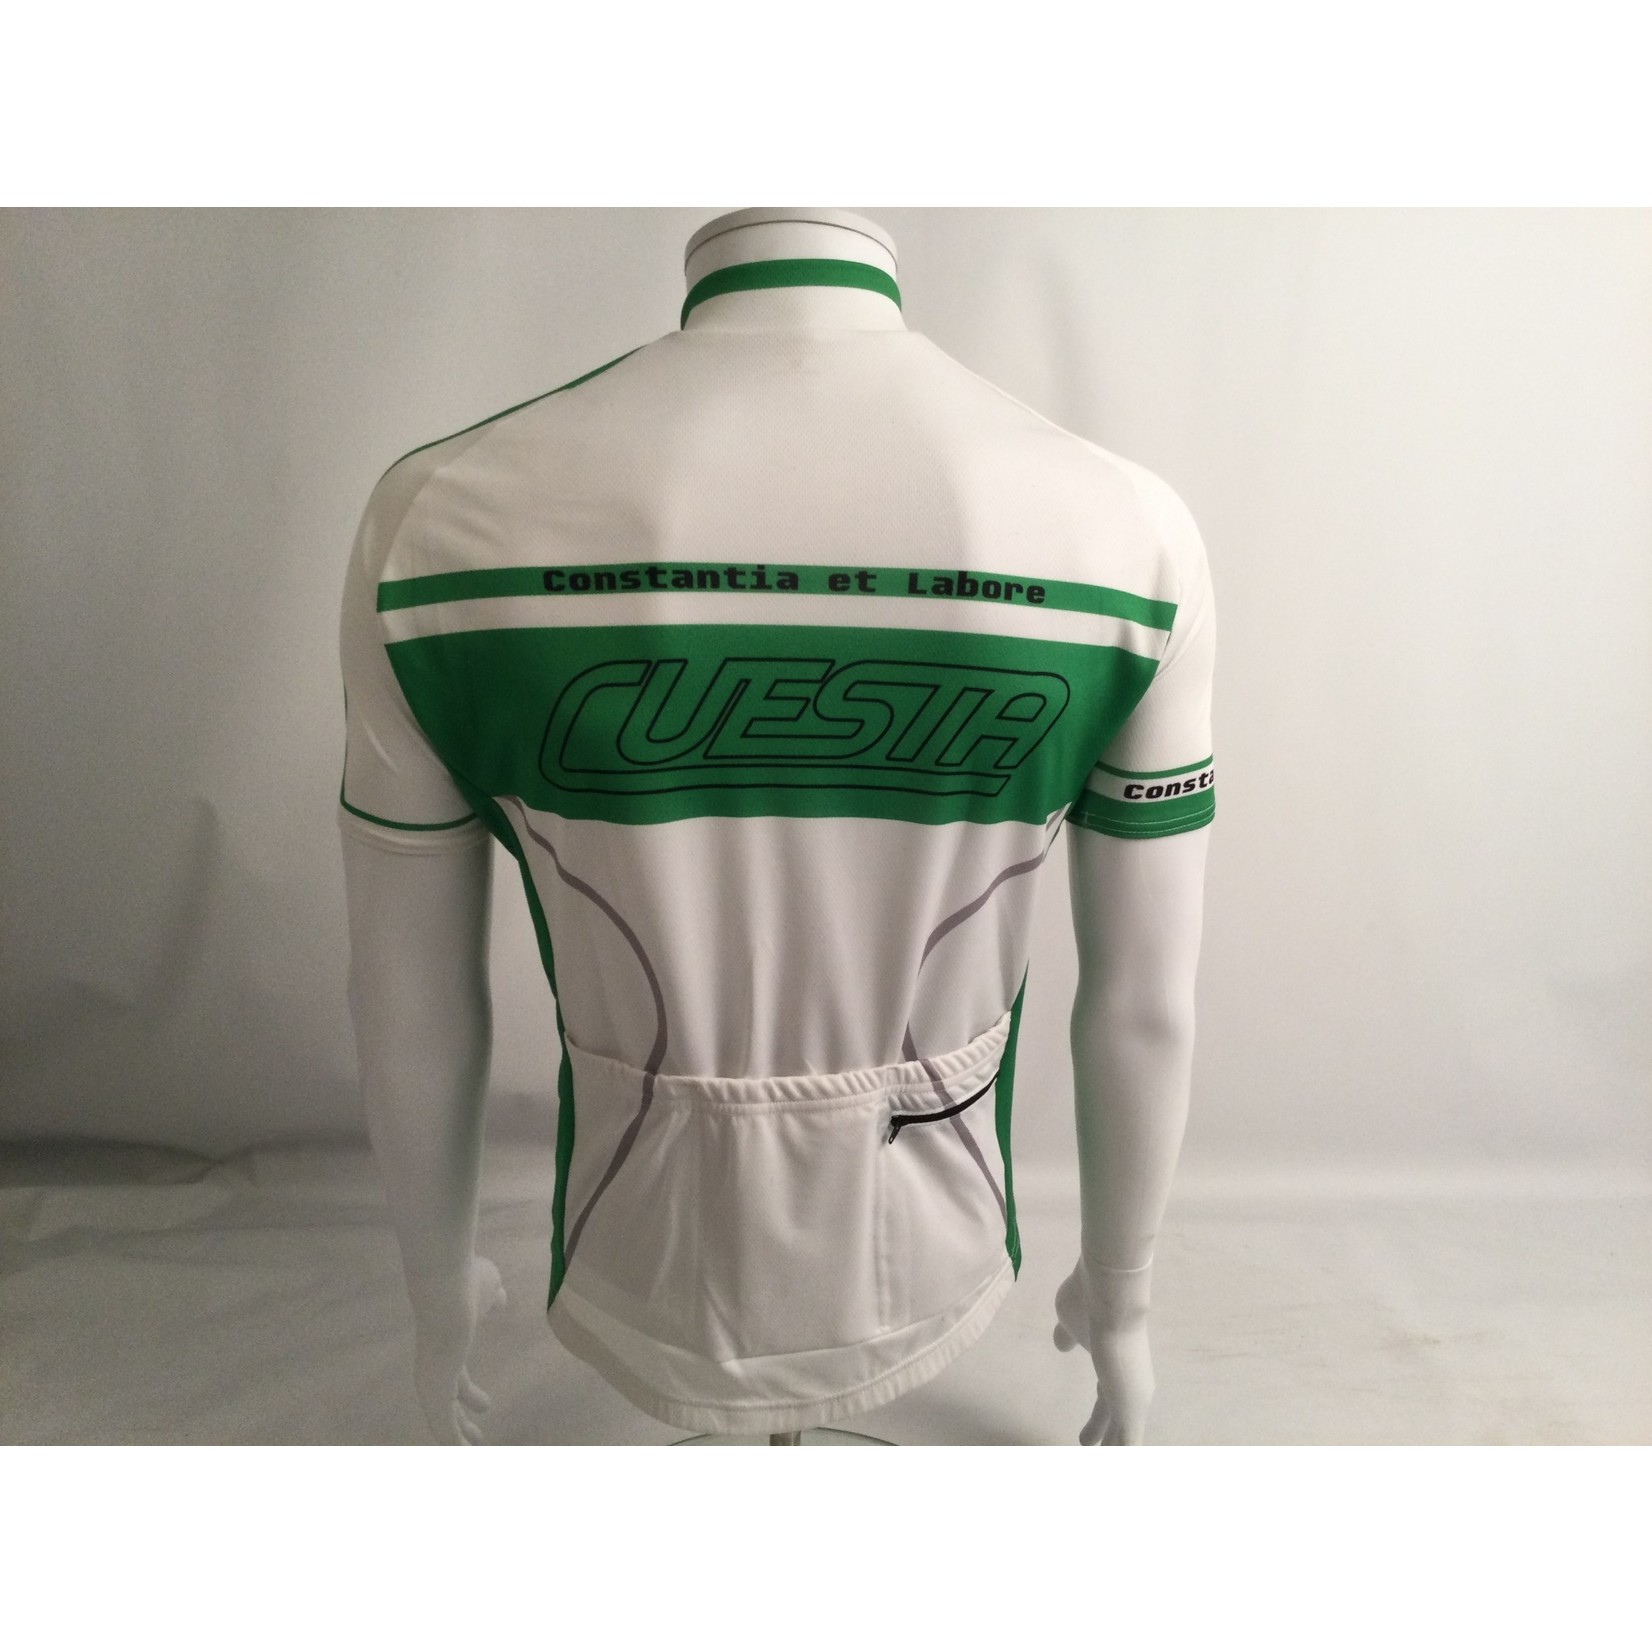 Cuesta Cuesta Green/White Short Sleeved Jersey - Medium